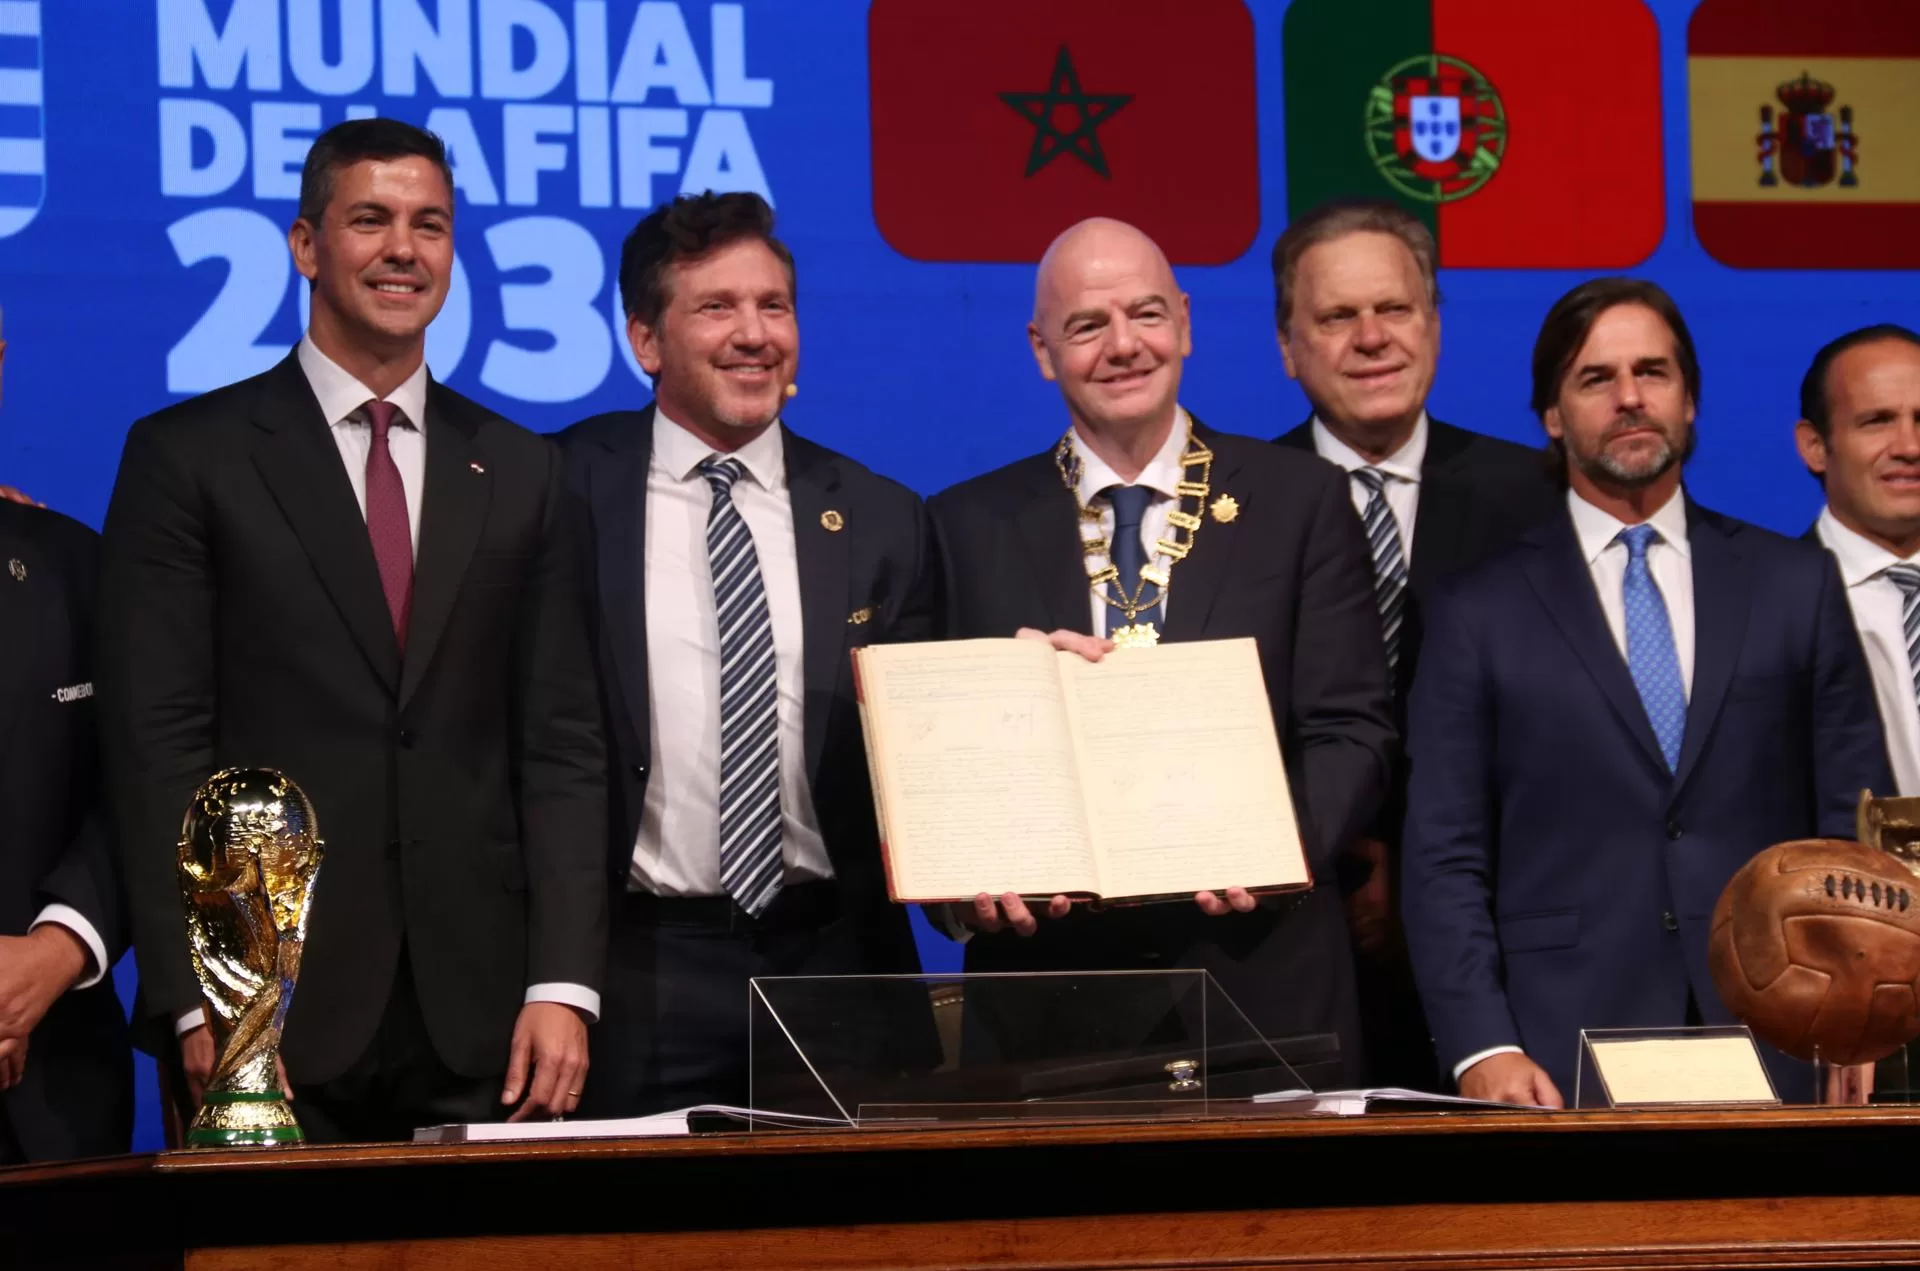 rss-efecafcdcd4d1a1efcbbf3ed3378334ae9e3c1f2d42w-jpg La FIFA y la Conmebol firman, junto a presidentes de Paraguay y Uruguay, acta del Mundial 2030